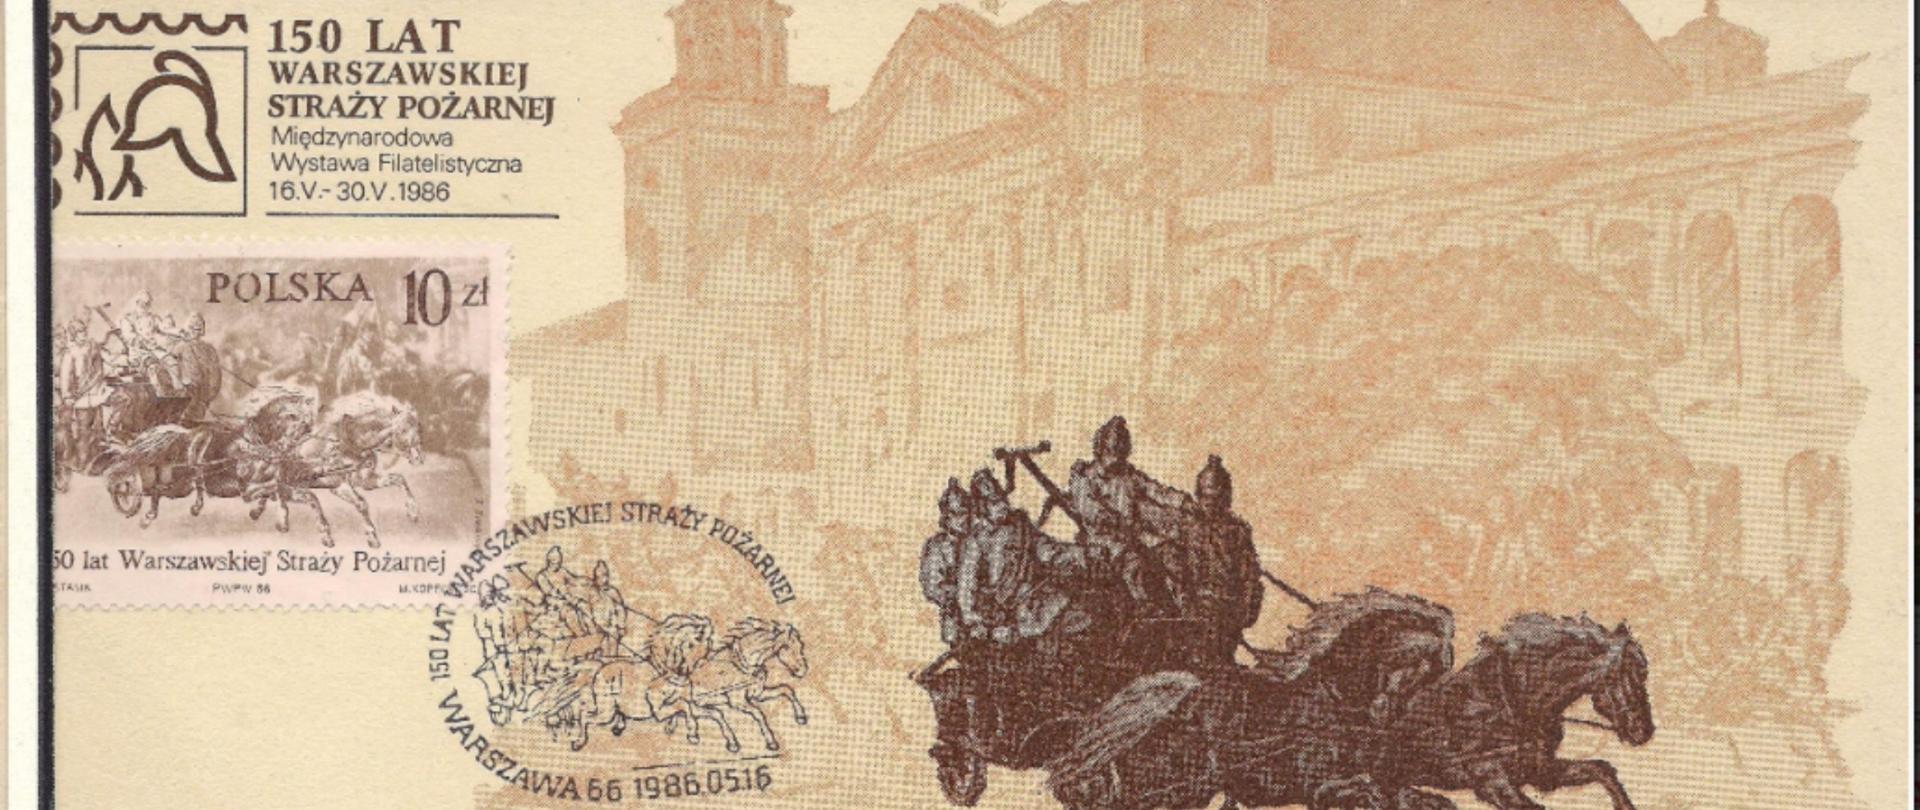 na zdjęciu widać fragment karty "150 lat warszawskiej straży pożarnej"